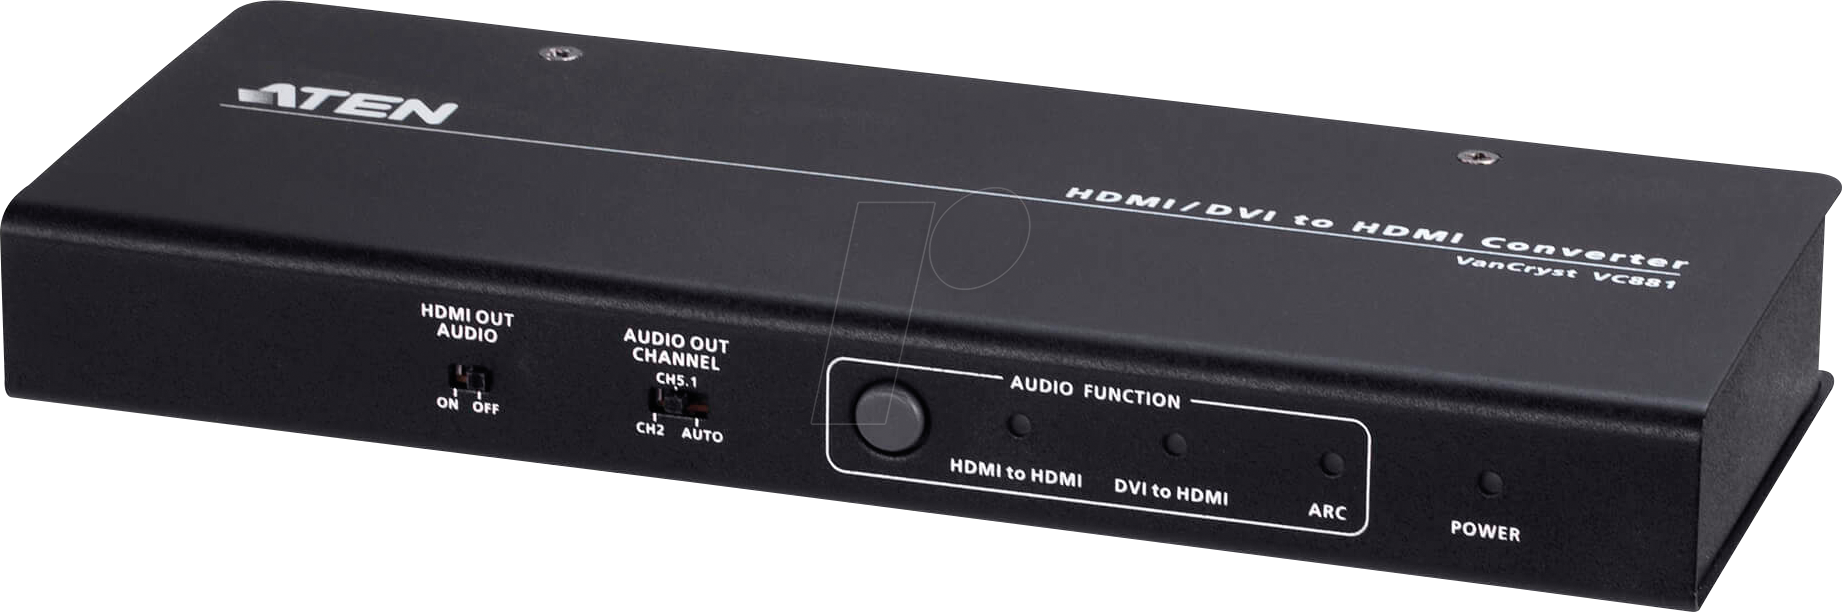 ATEN VC881 - 2-Port HDMI / DVI auf HDMI Konverter Switch von Aten